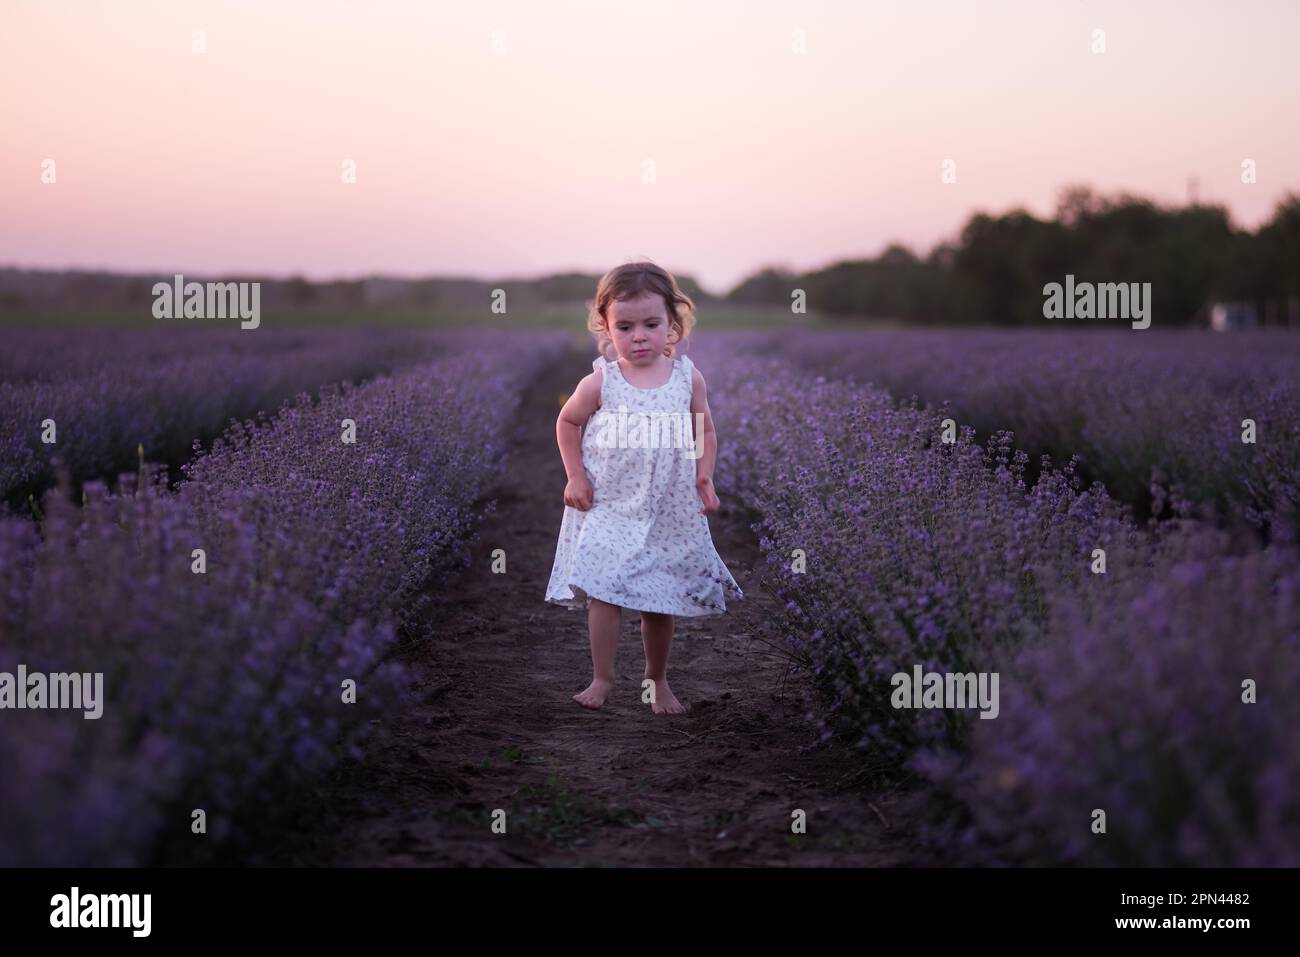 La bambina in vestito di fiore corre a piedi nudi attraverso il campo di lavanda viola tra le file al tramonto. I bambini più piccoli si divertono a passeggiare in campagna. Foto Stock